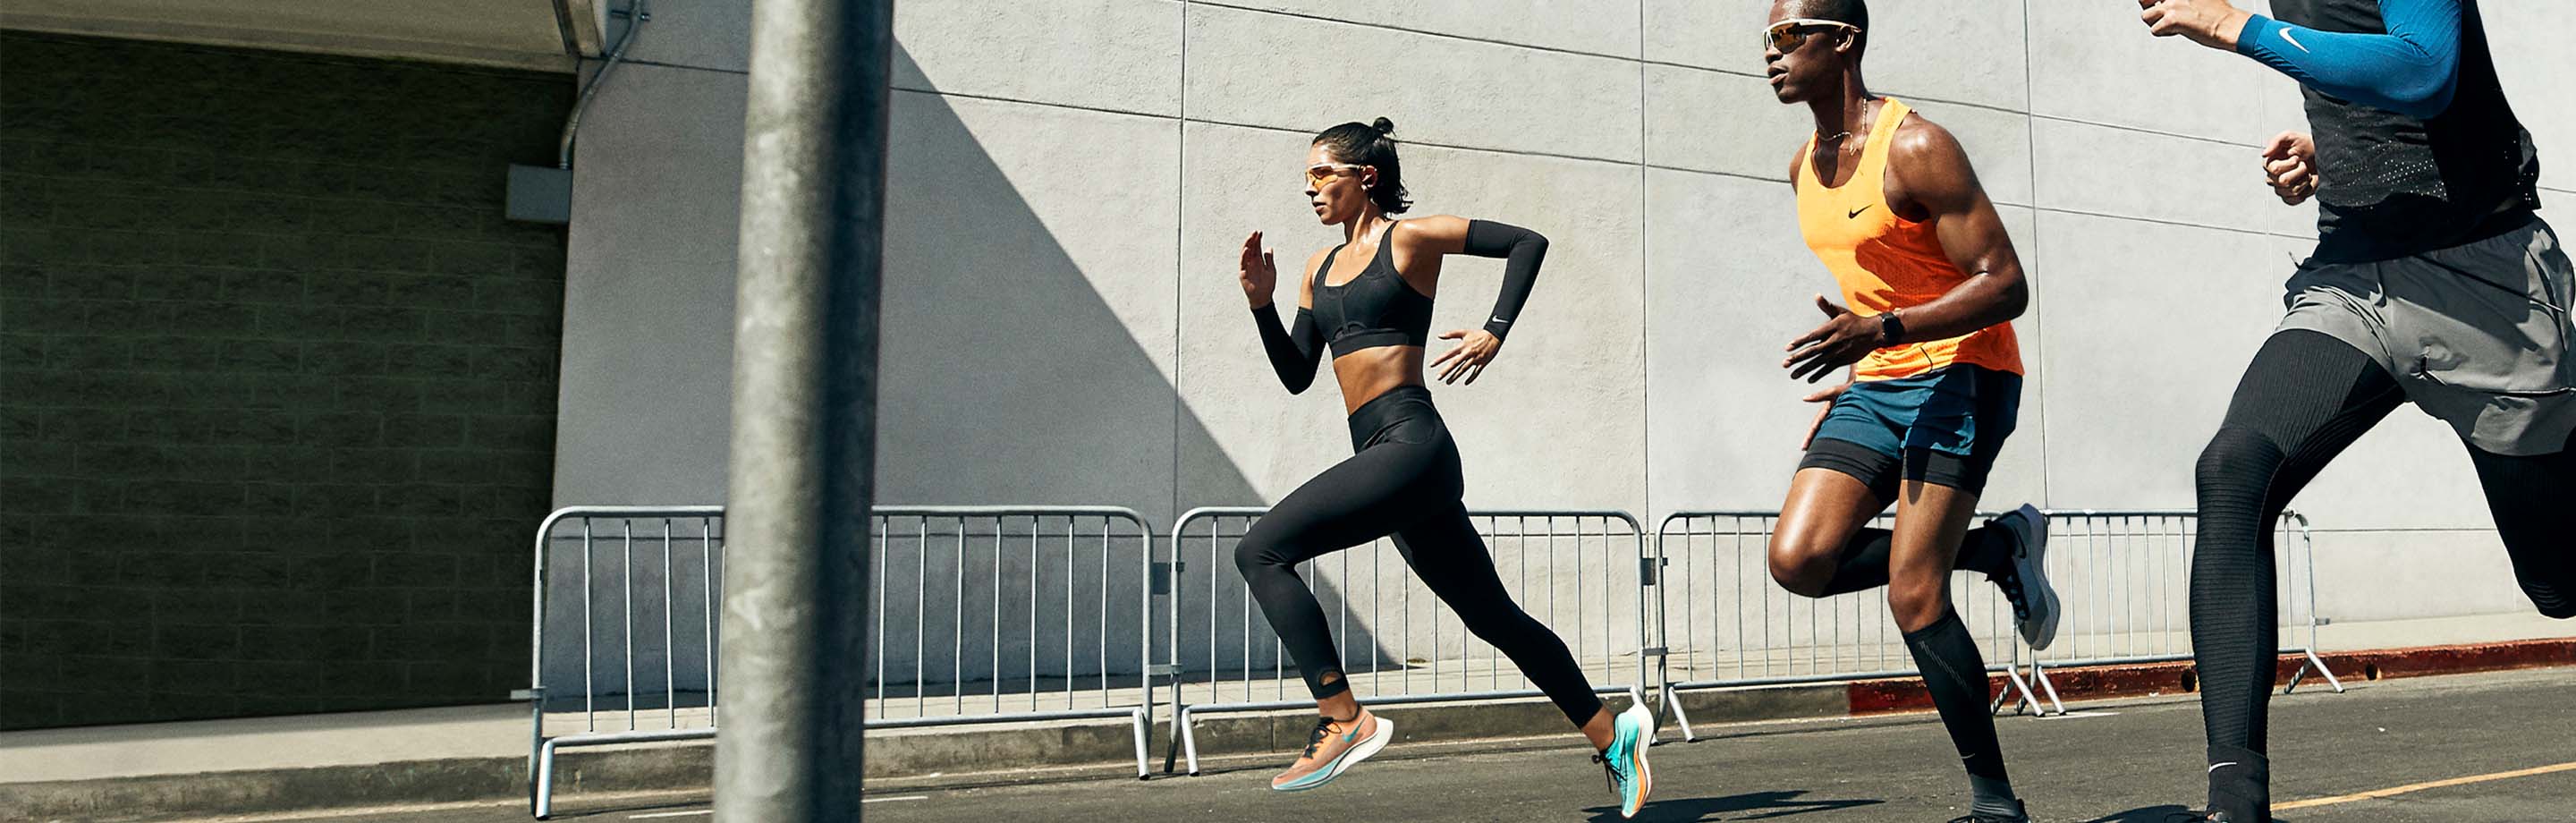 Nike - Scarpe eleganti, abbigliamento sportivo e accessori